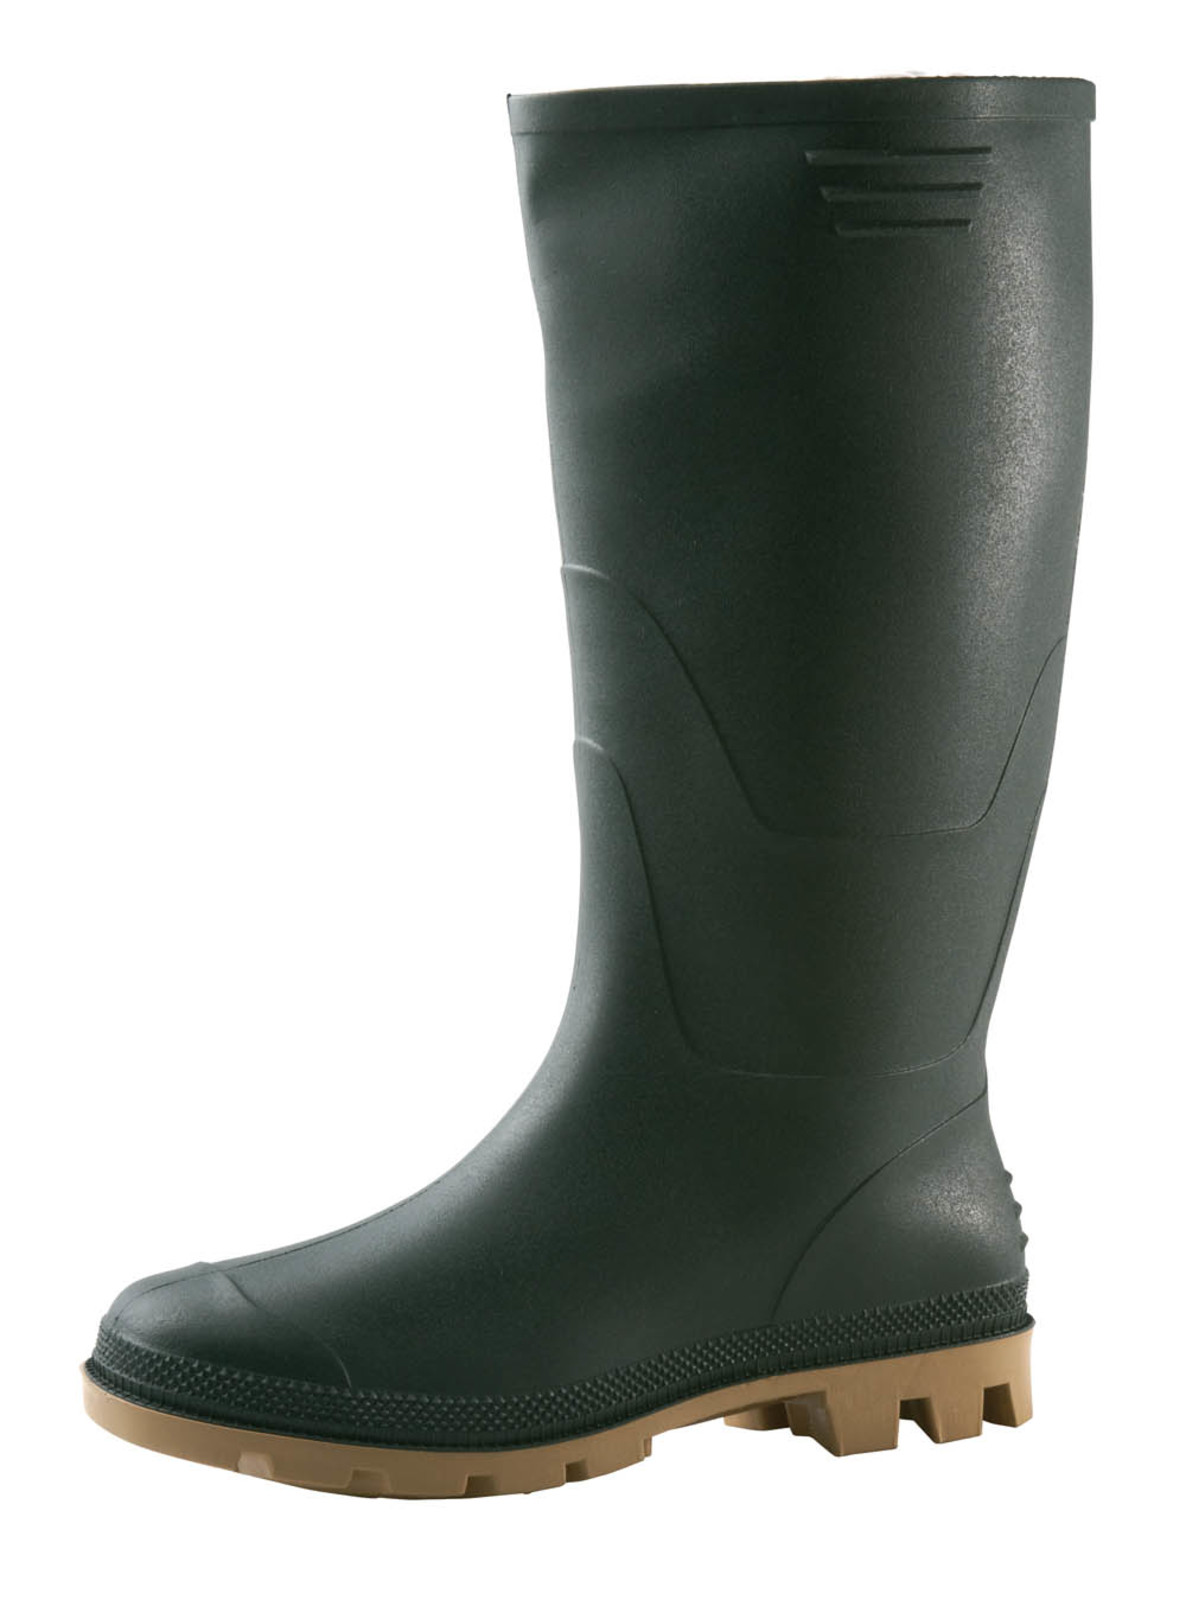 Gumáky Boots Ginocchio PVC - veľkosť: 47, farba: zelená